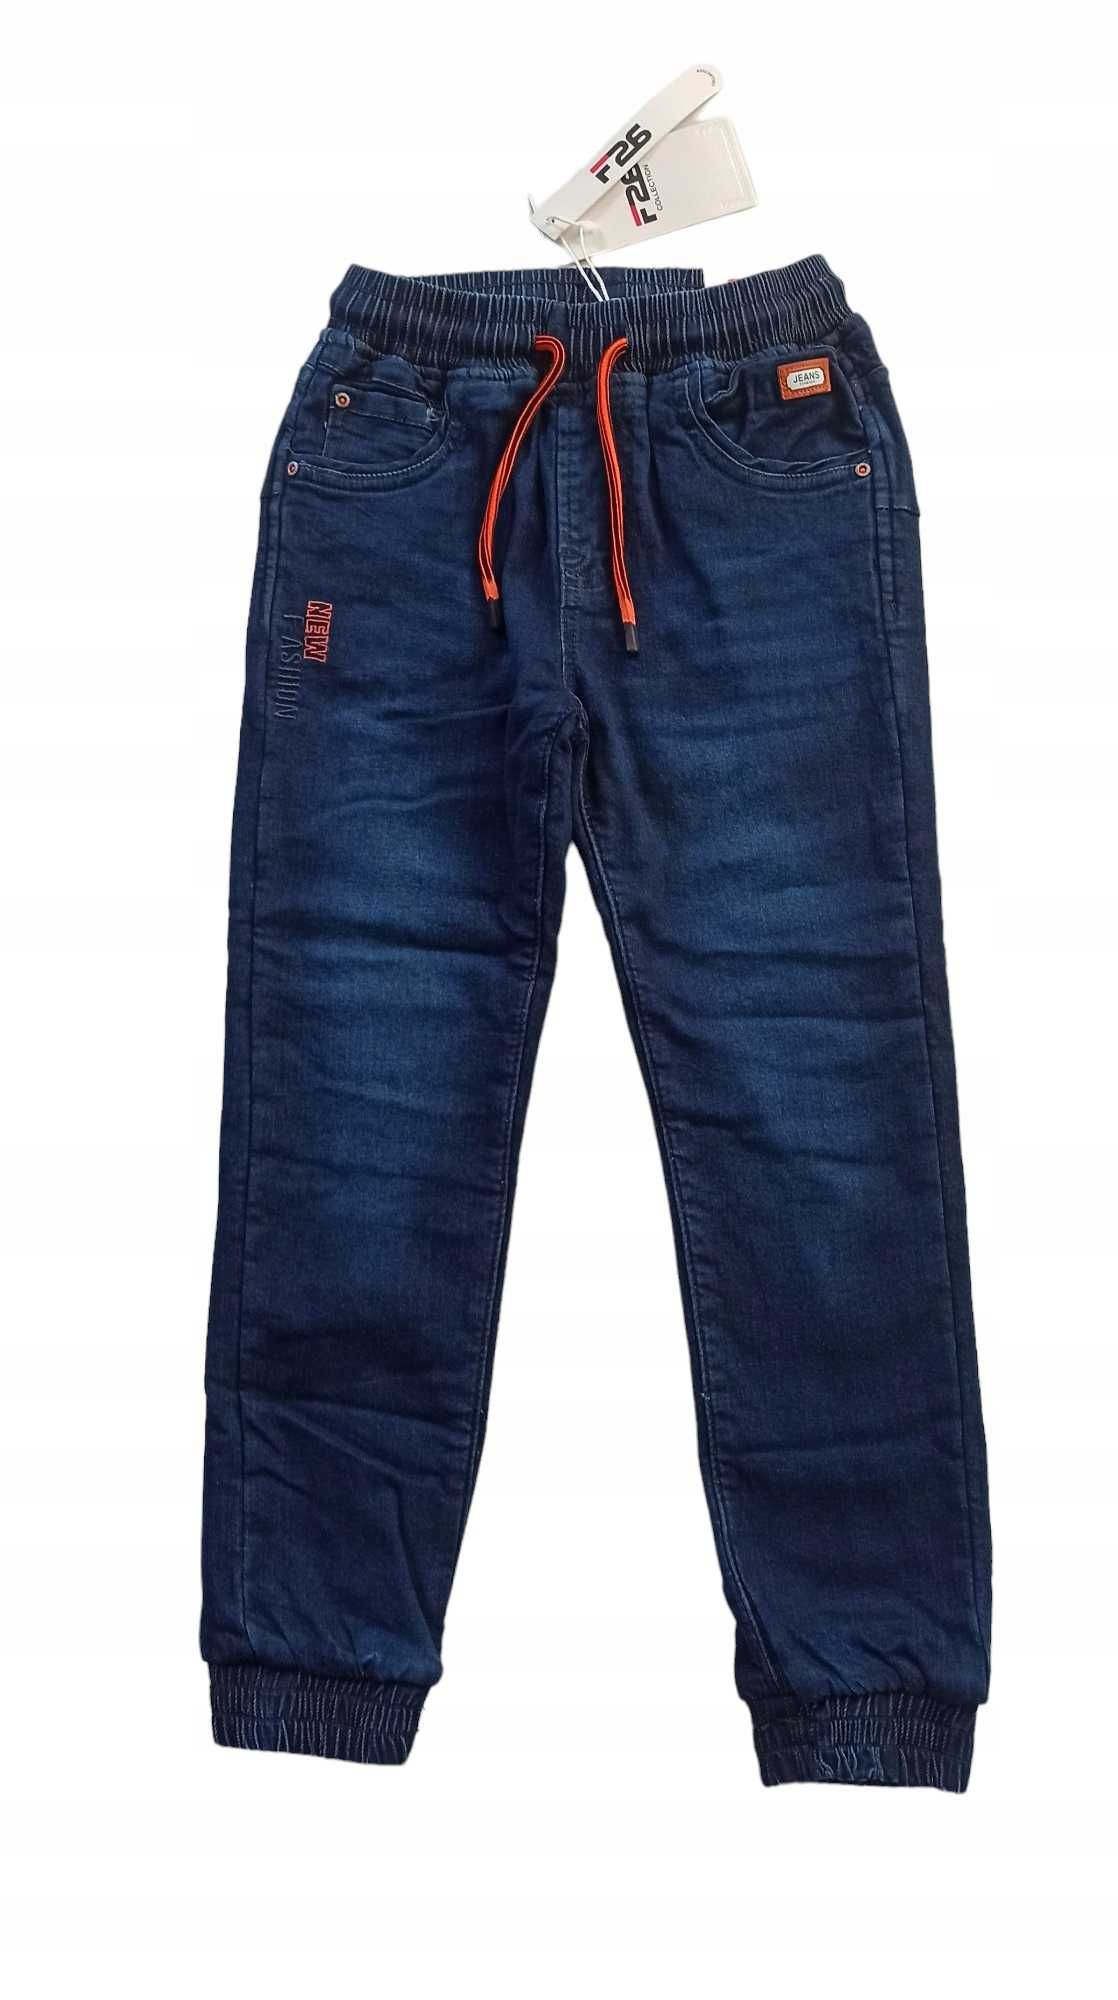 Spodnie Jeans miękkie elastyczne GUMA ocieplane polarem  nowy  170-176